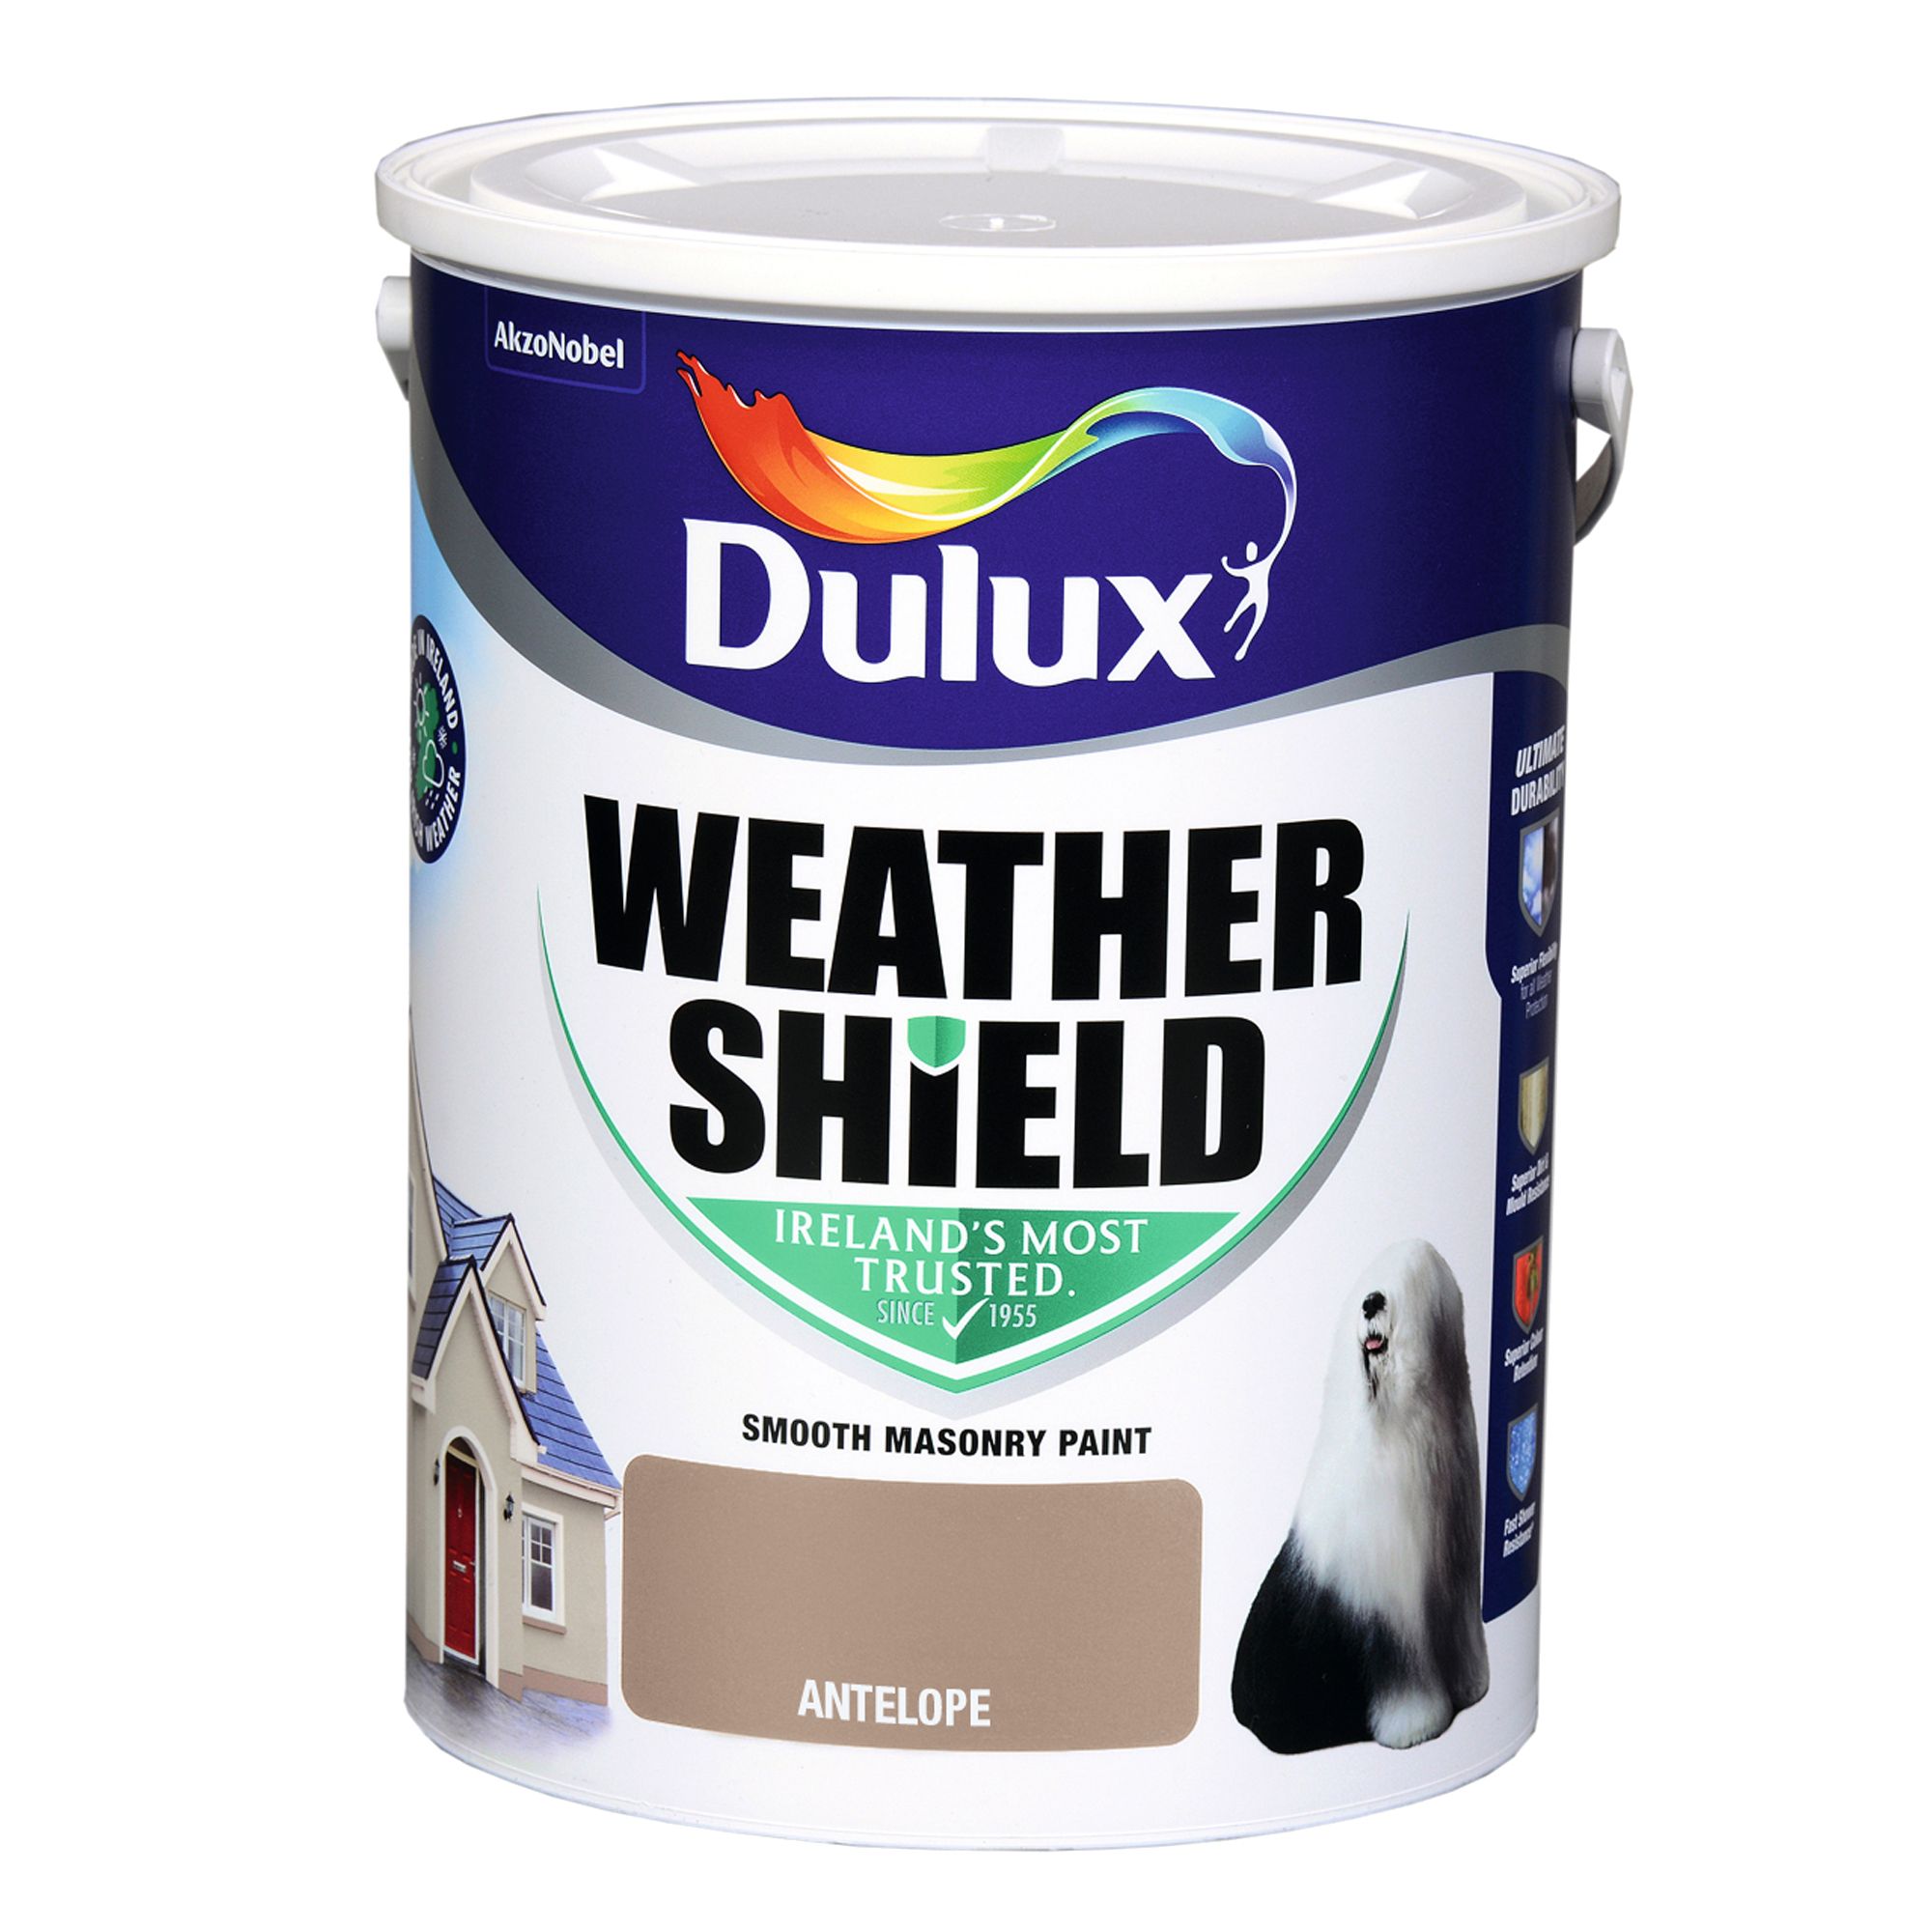 Dulux Weathershield Antelope Smooth Super matt Masonry paint, 5L